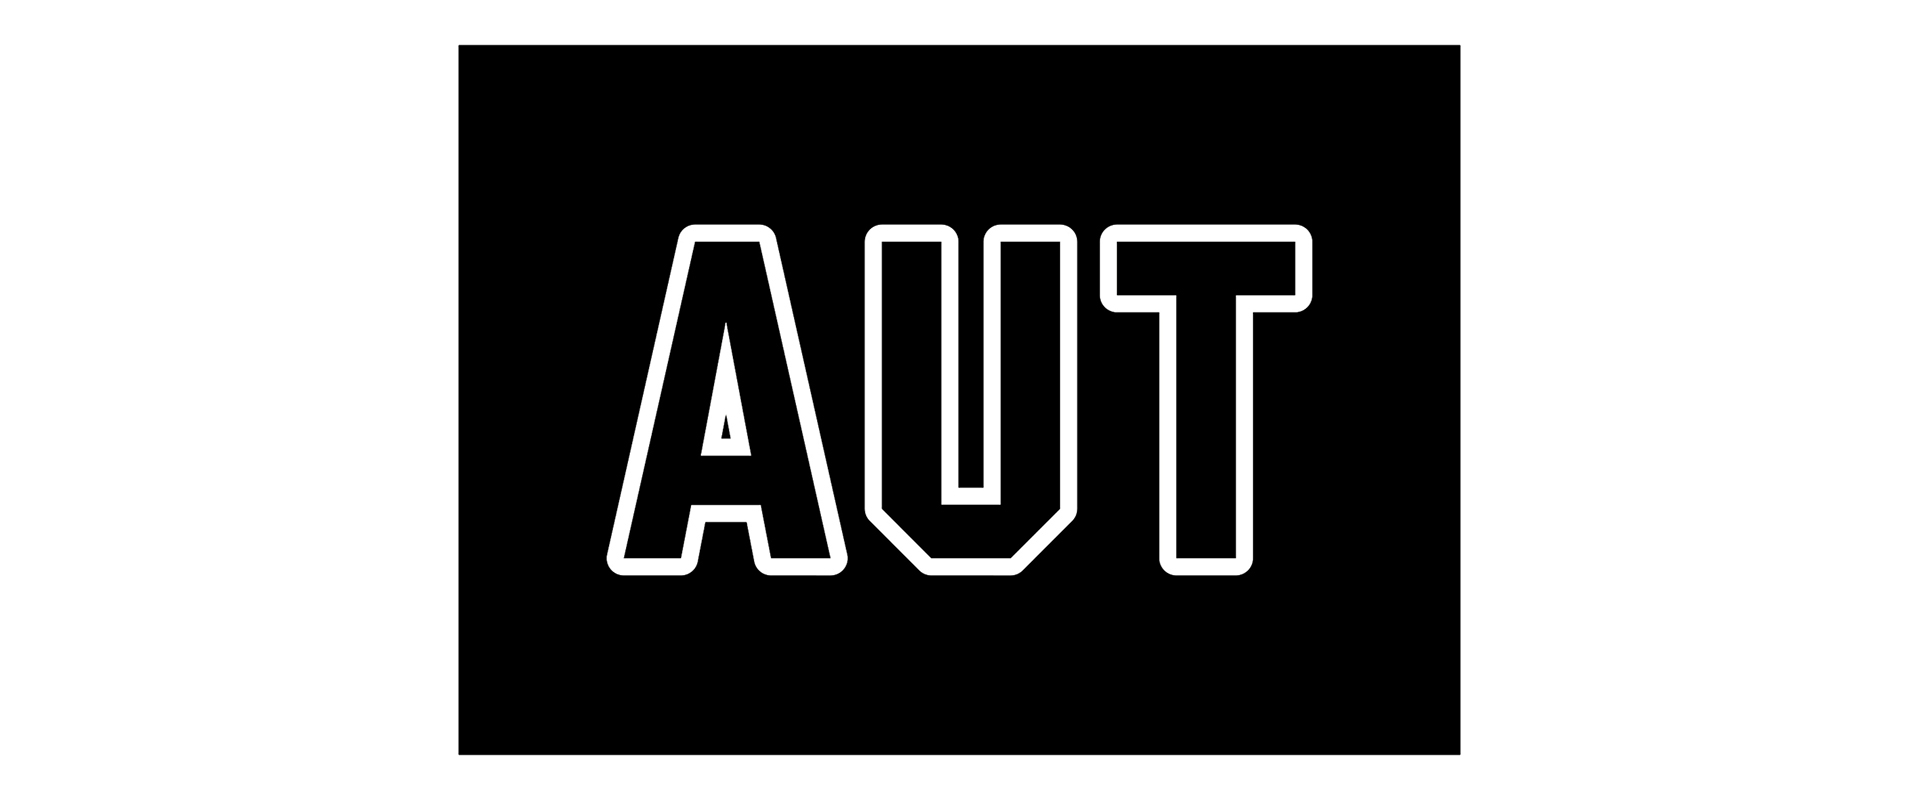 Blocage AUT-logo